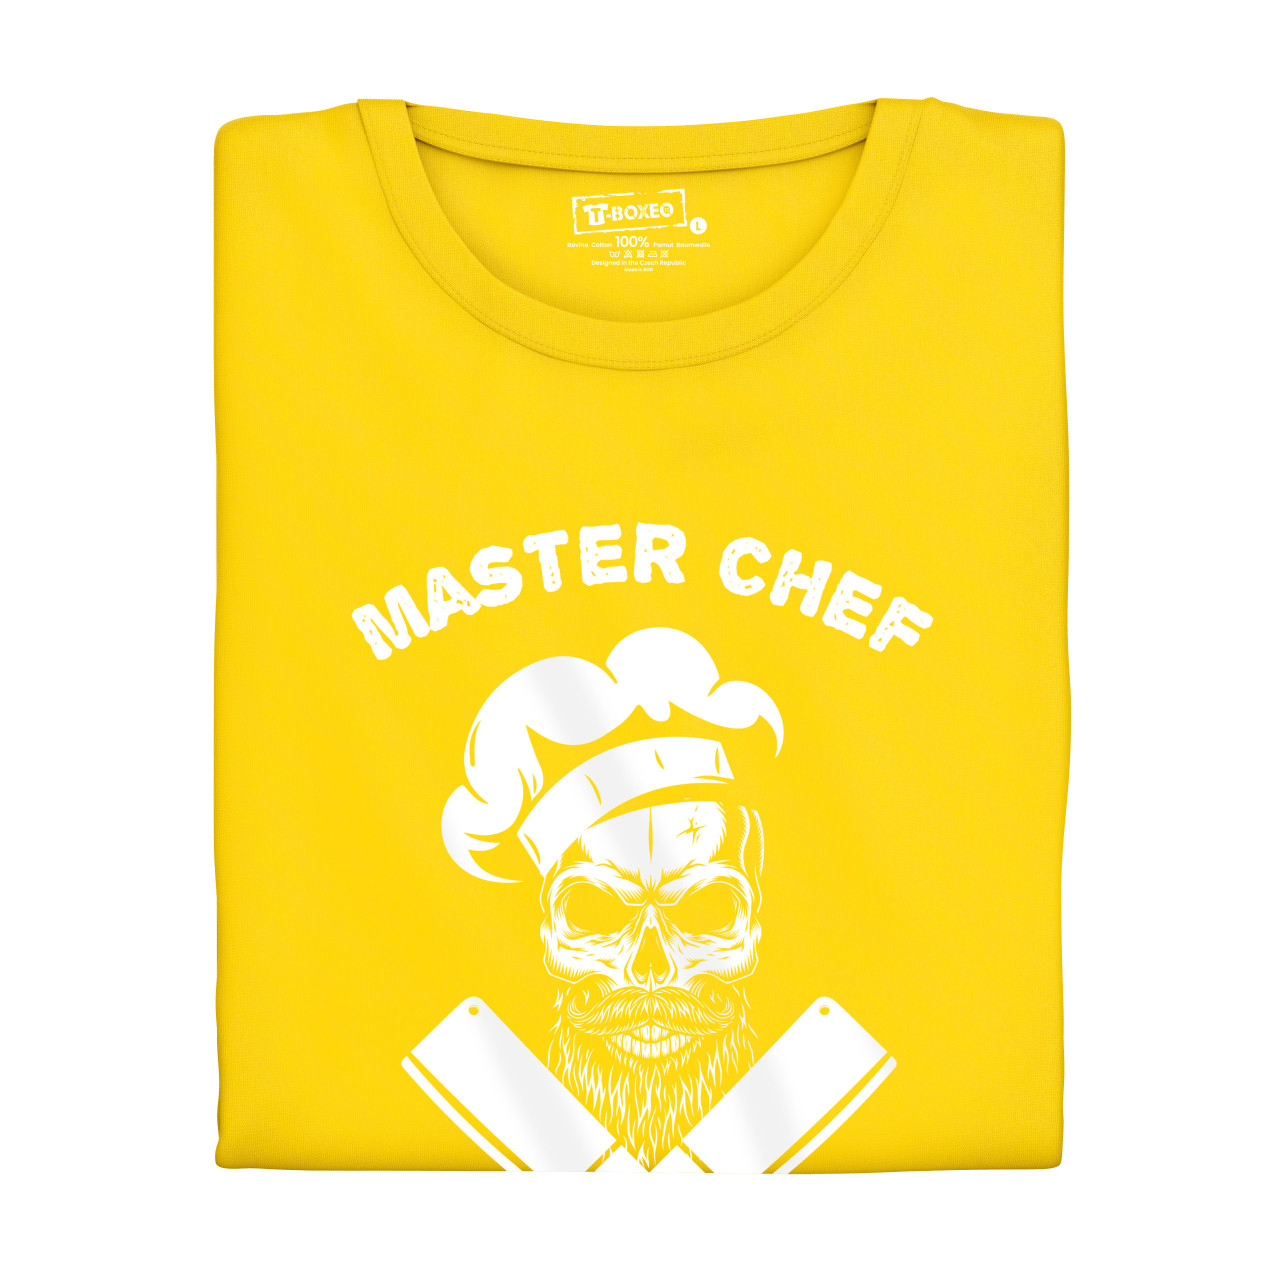 Pánské tričko s potiskem "Master Chef"